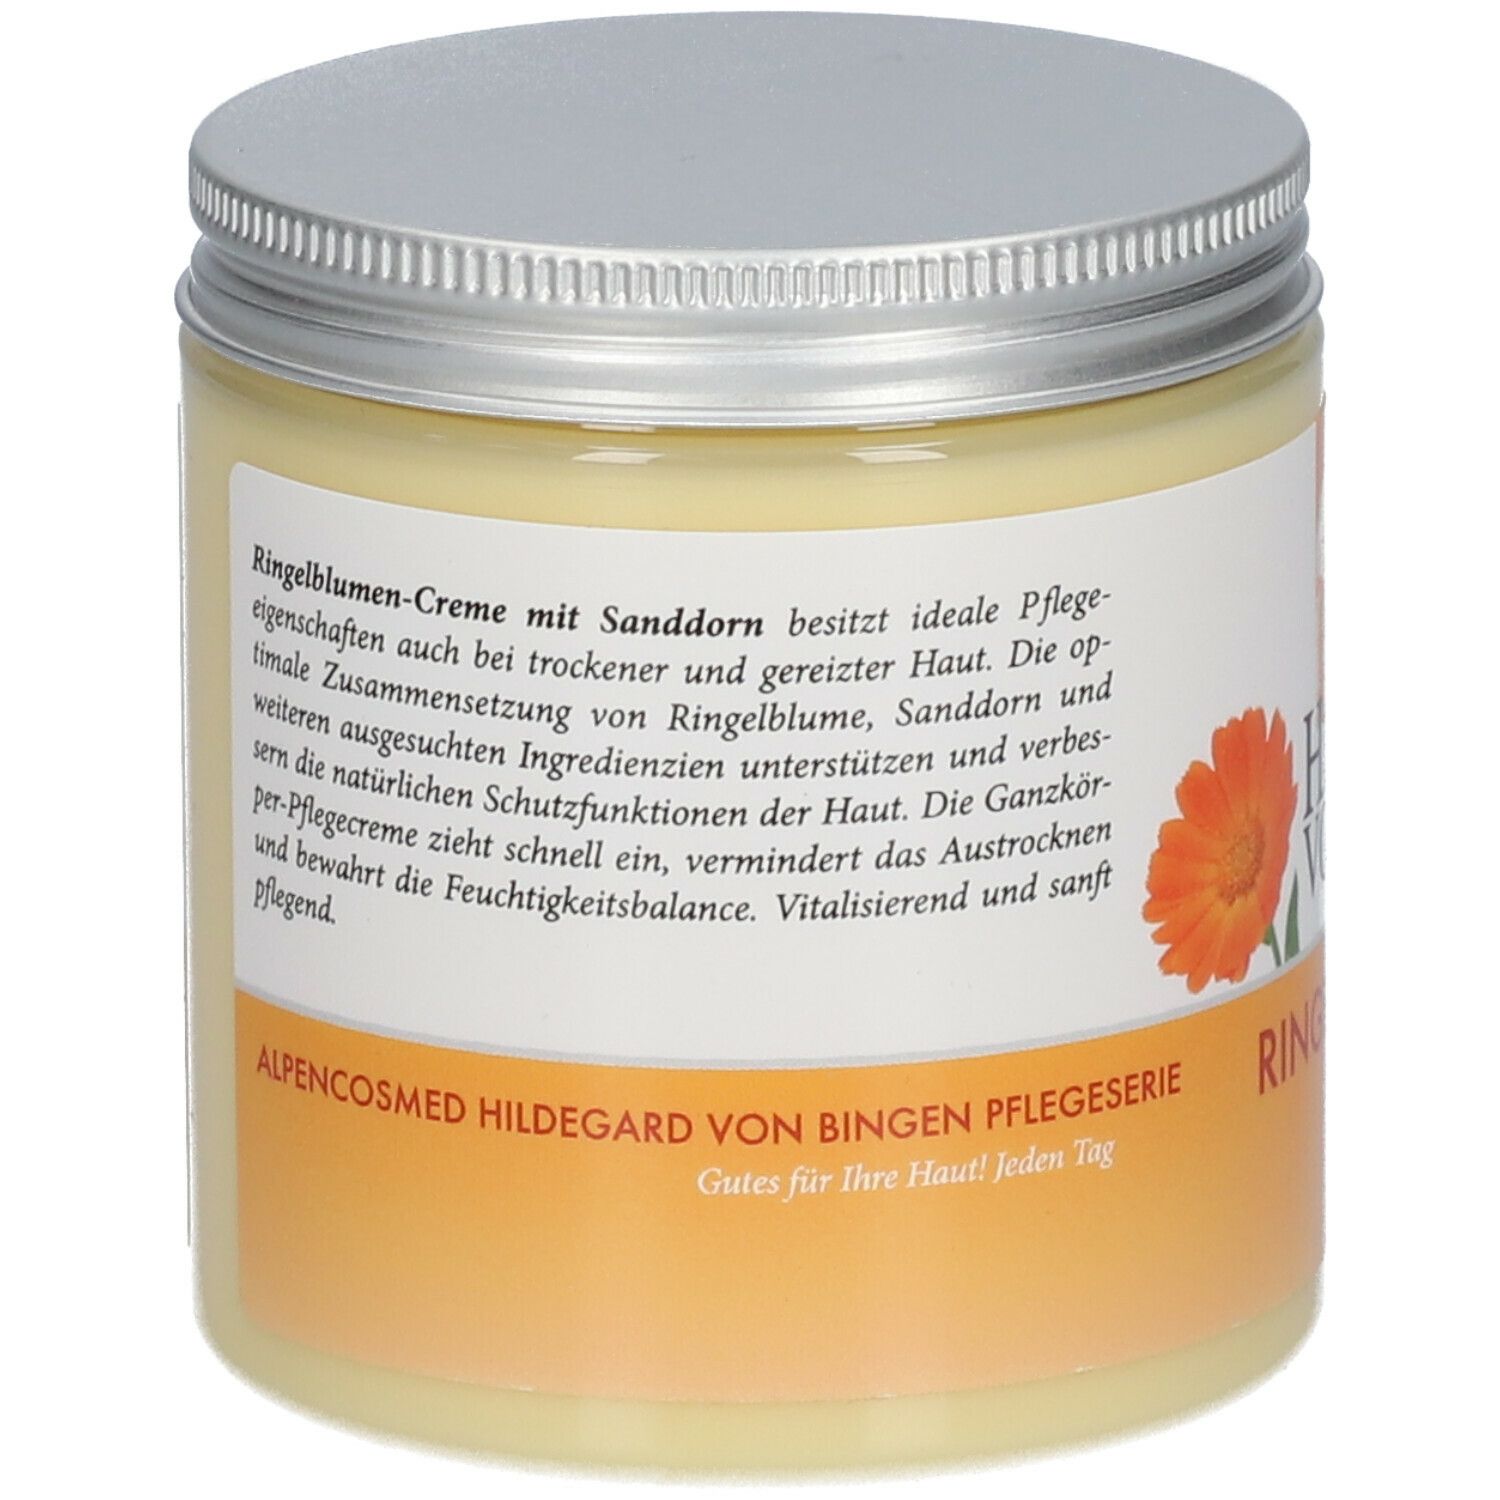 Alpencosmed® Hildegard von Bingen Ringelblumen Creme